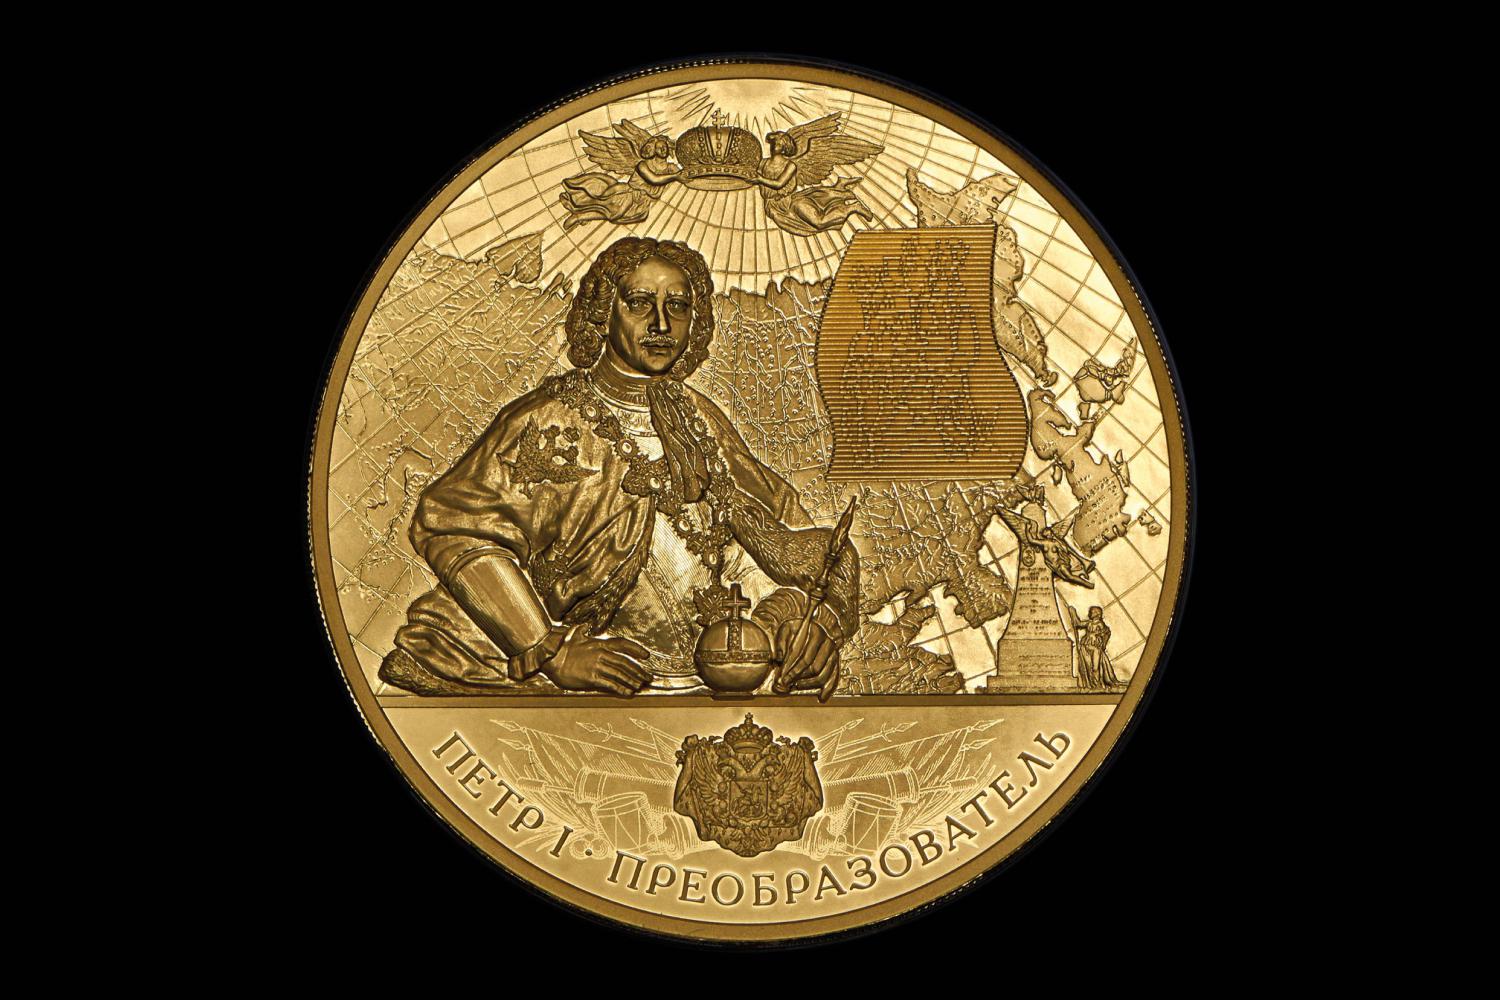 Монета 10 000 руб. &laquo;350-летие со дня рождения Петра I&raquo;, 2022. Золото 999-й пробы (чистого металла 1 кг).&nbsp;Стартовая цена: 4,8 млн руб.